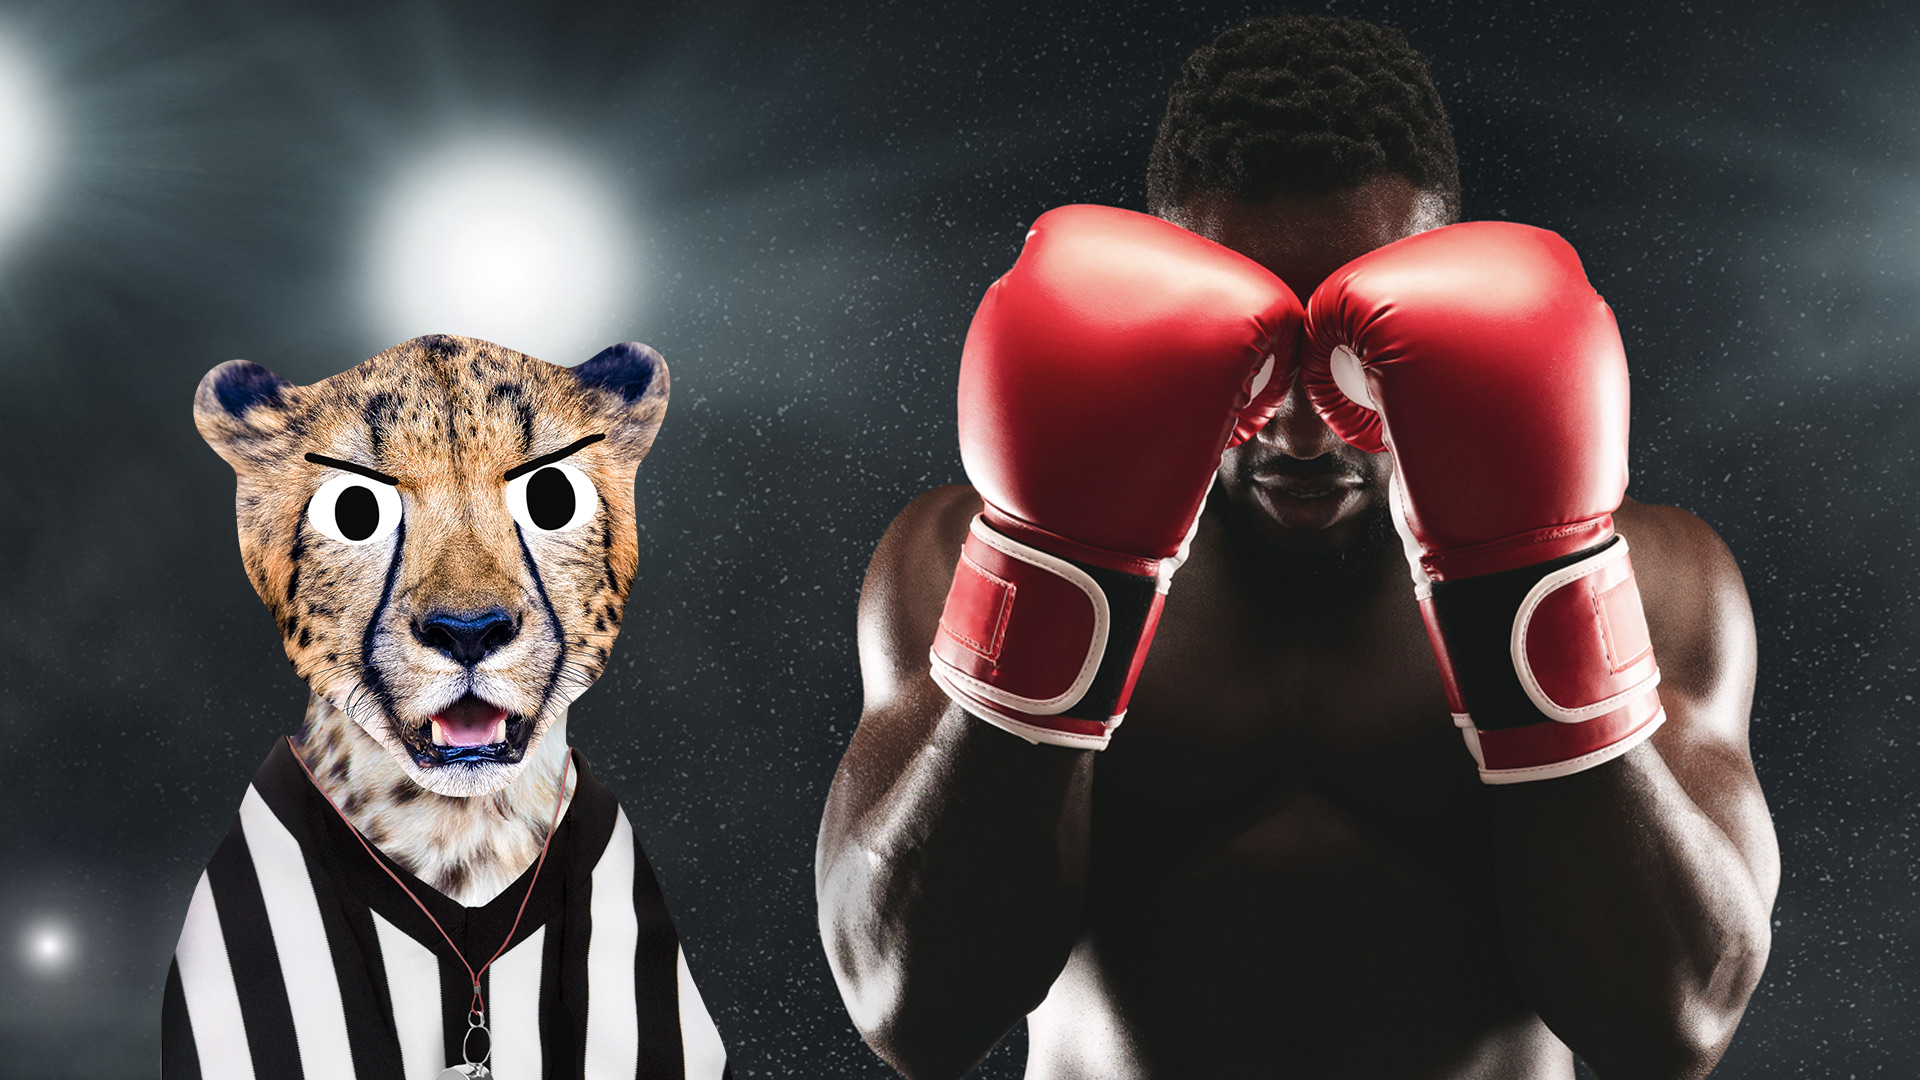 A boxer and cheetah referee